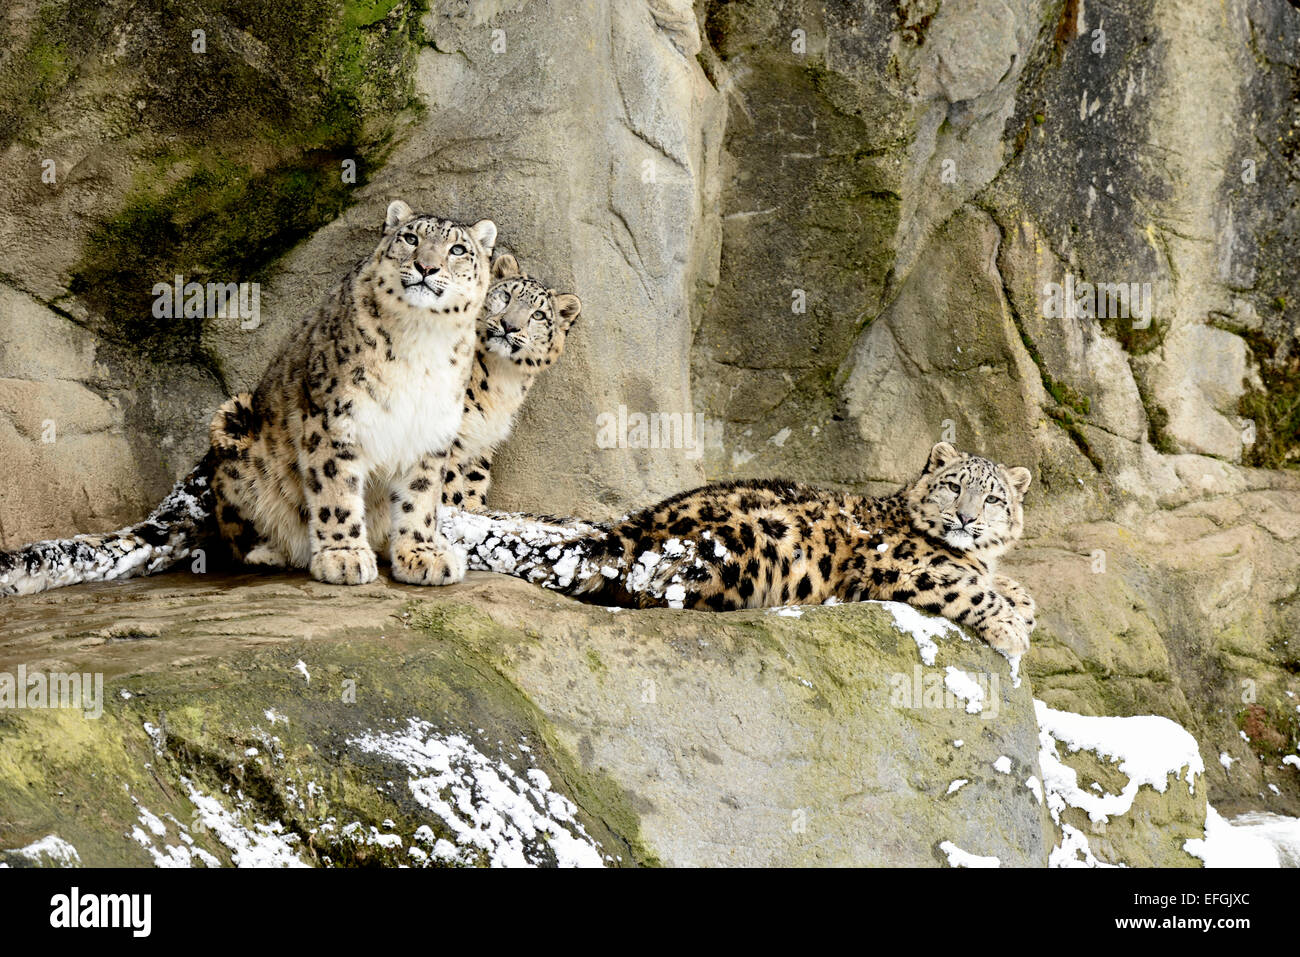 Snow Leopard (Panthera uncia), femme avec deux oursons, captive, Suisse Banque D'Images